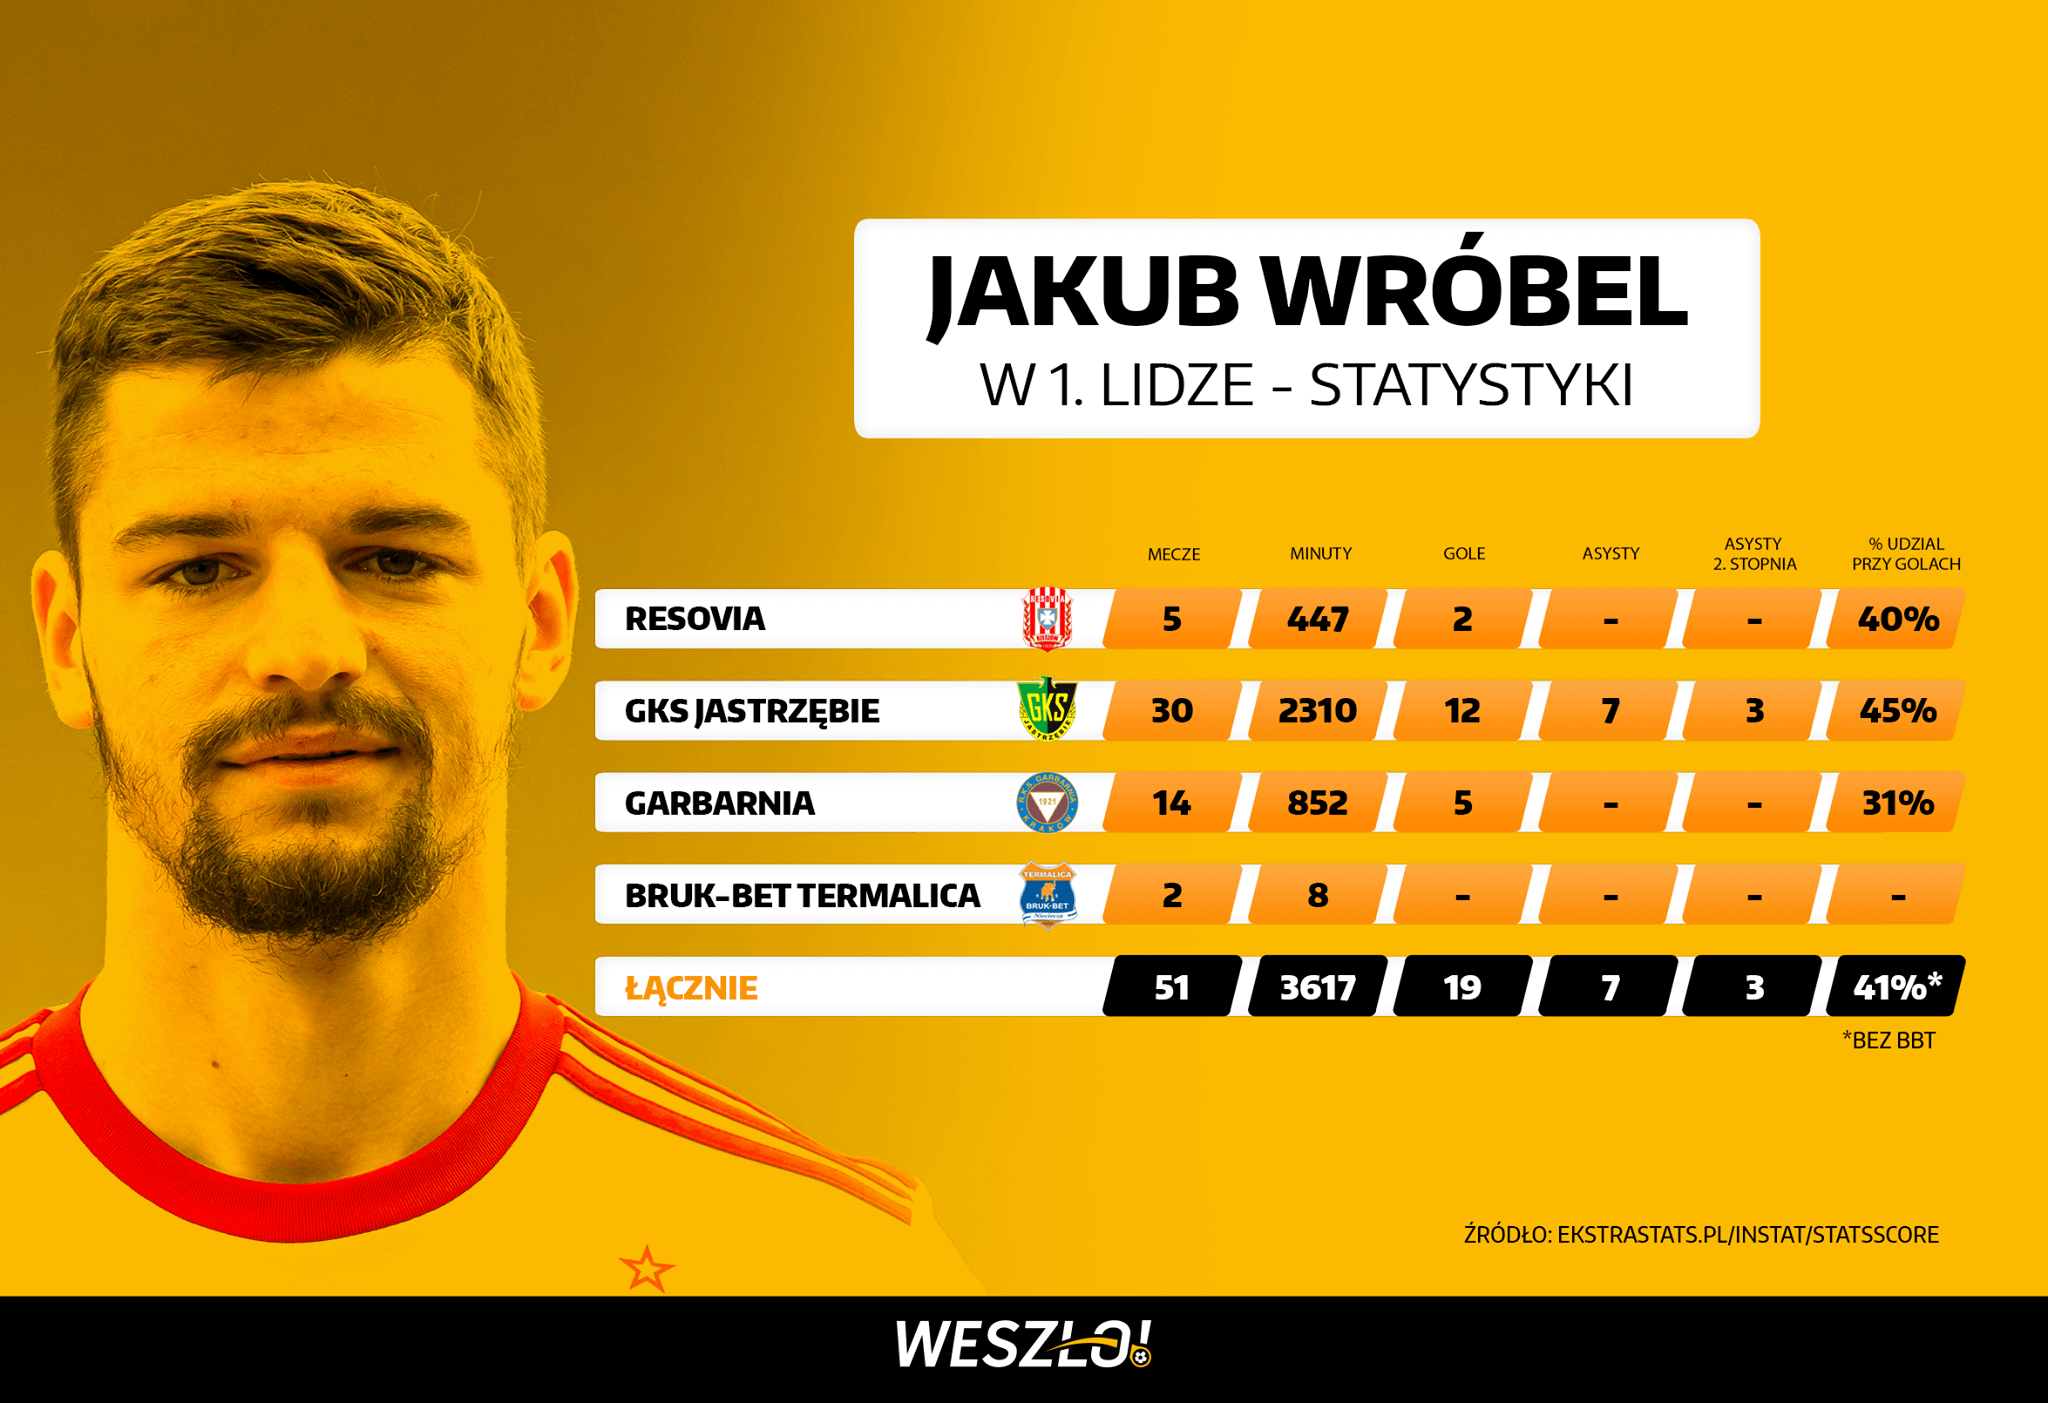 Statystyki Jakuba Wróbla w 1. lidze - Resovia, GKS Jastrzębie, Garbarnia Kraków